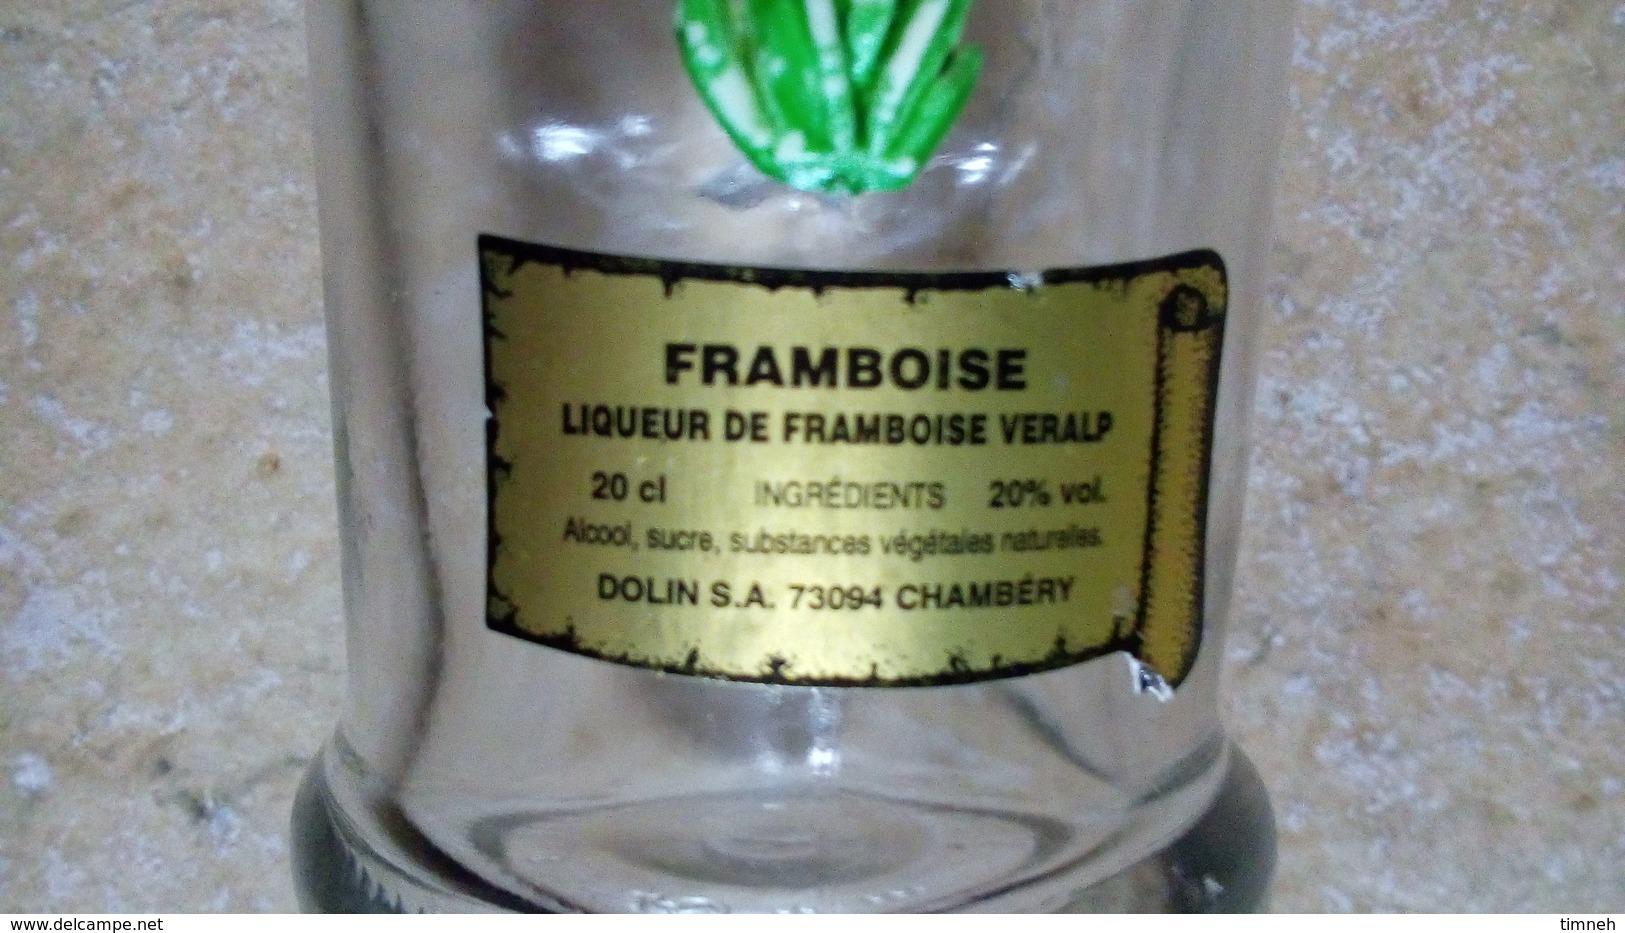 LIQUEUR FRAMBOISE VERALP - PETITE (20cl) BOUTEILLE VERRE - FLEUR GENTIANE Deco Plastique -DOLIN CHAMBERY - Spirits